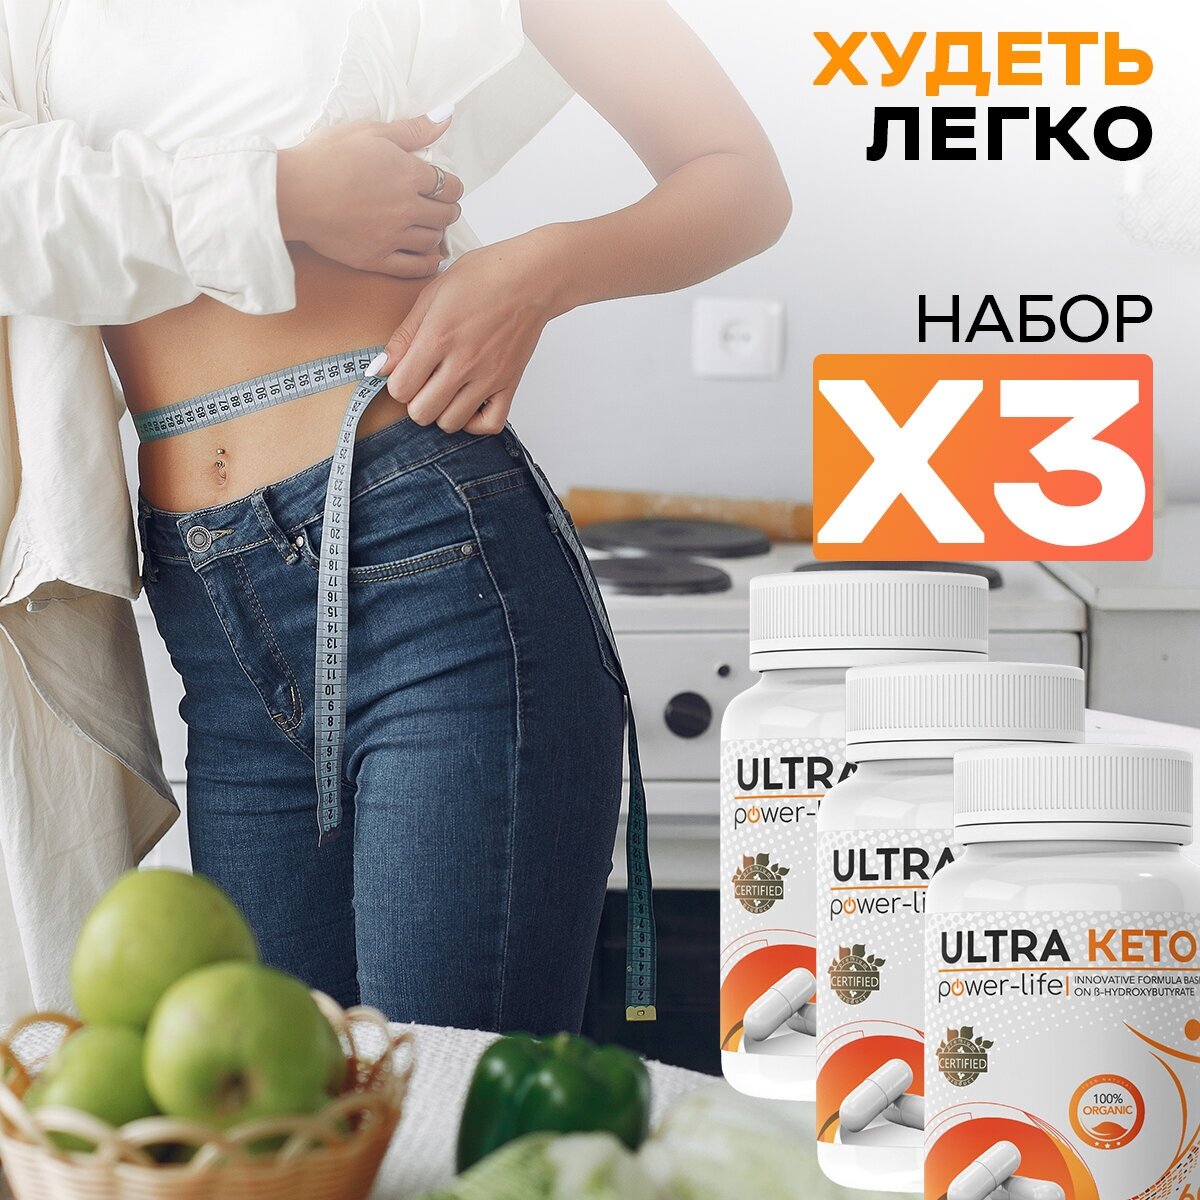 Ultra Keto power-life Натуральный комплекс для быстрого и безопасного похудение жиросжигатель, 3 шт